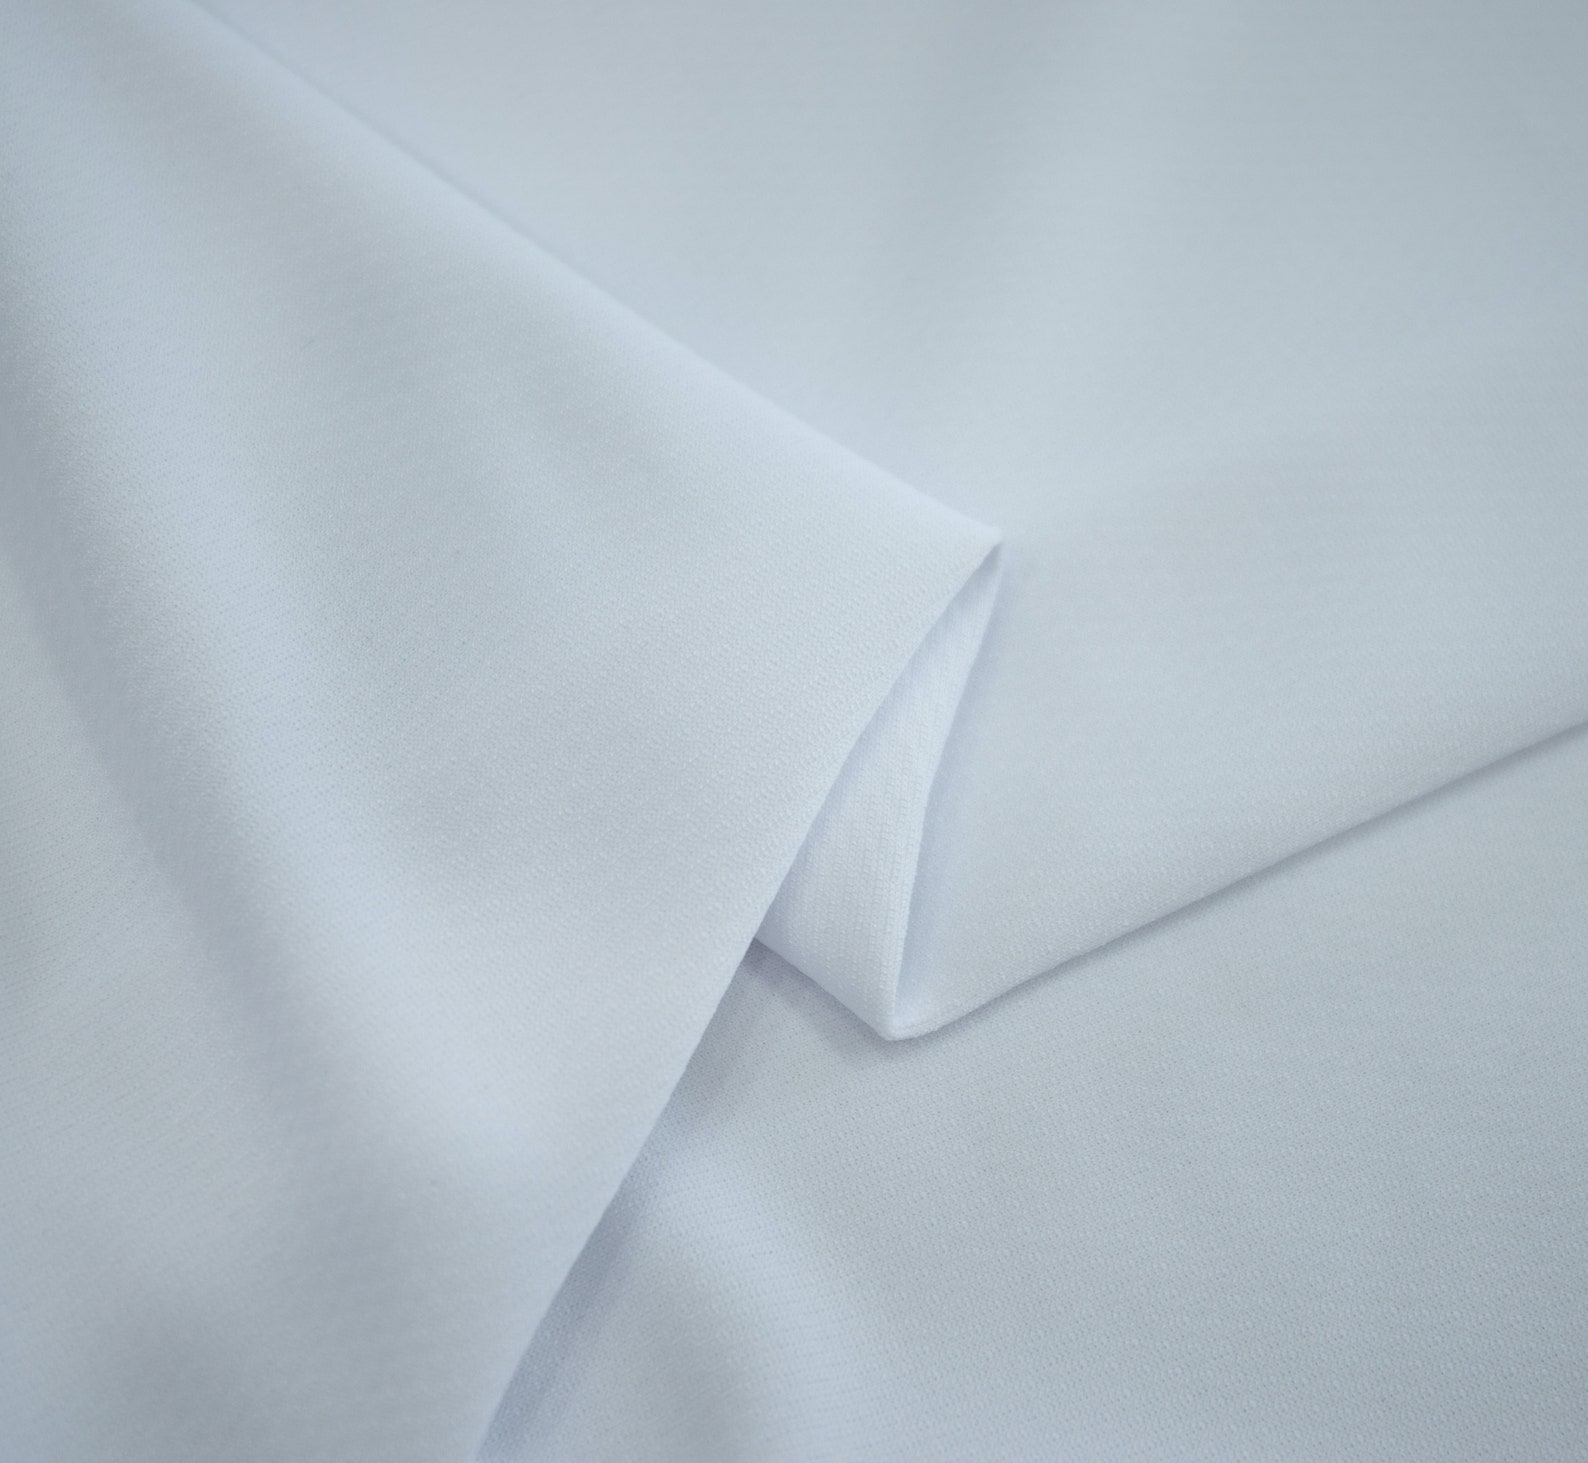 100% Polyester Birdseye/Mock Mesh Sports Athletic White Knit | Etsy